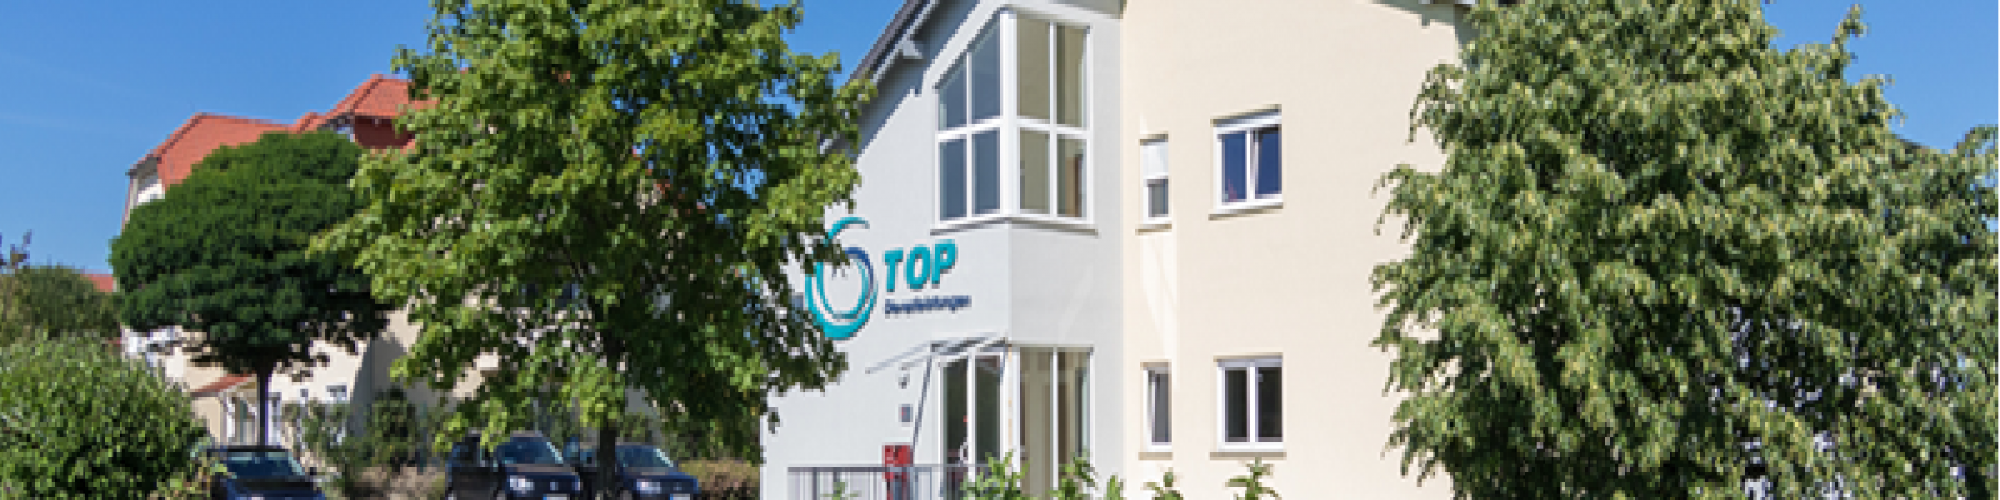 TOP Gebäudereinigung Sachsen GmbH & Co.KG